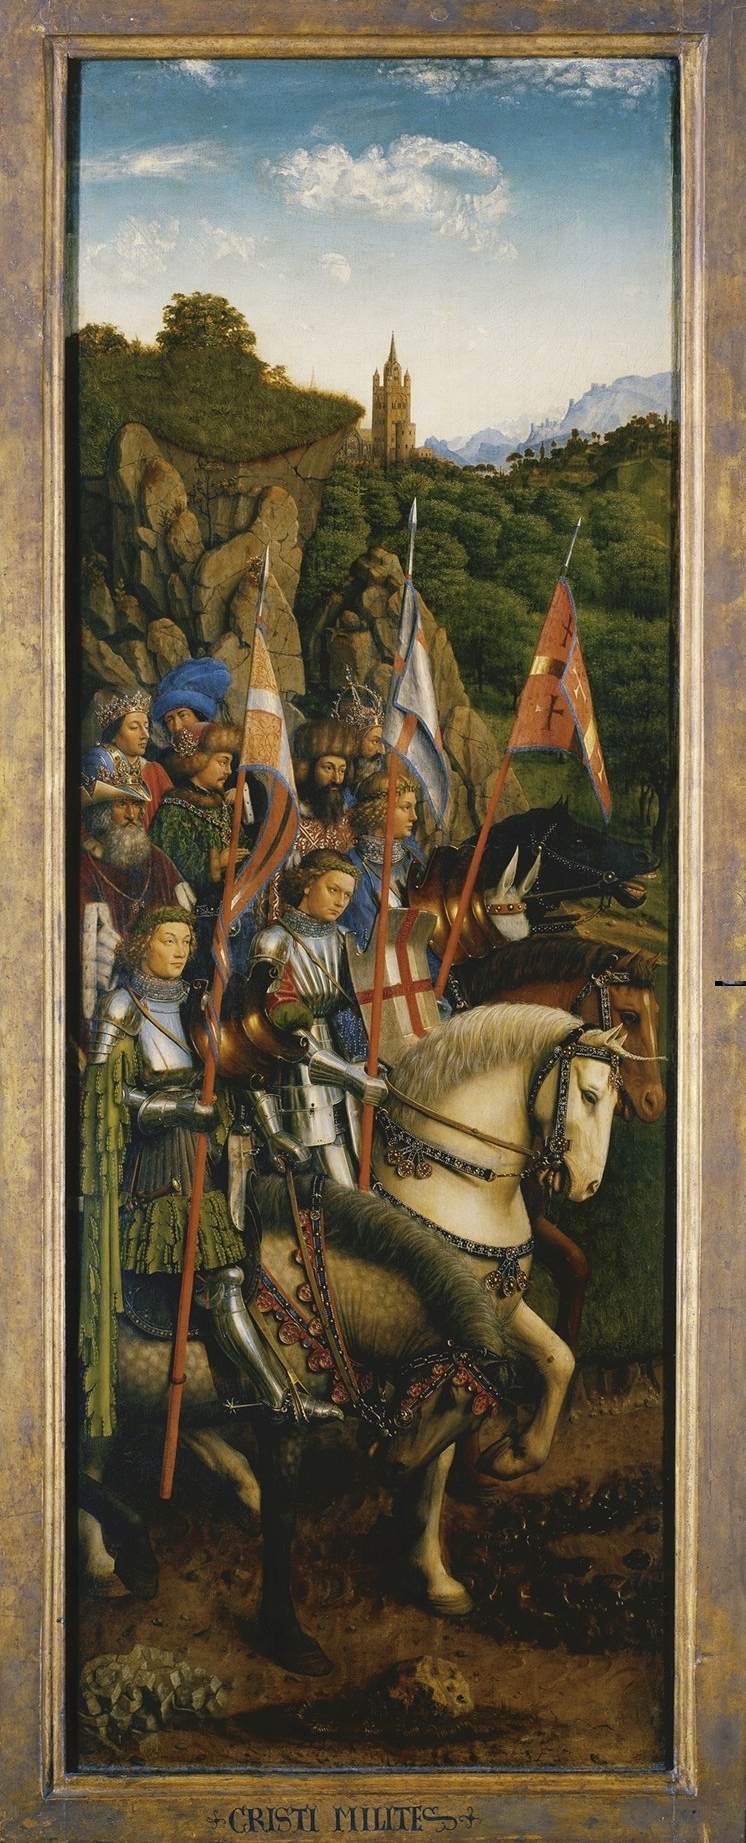 Das Altarbild Gent: Die Soldaten Christi